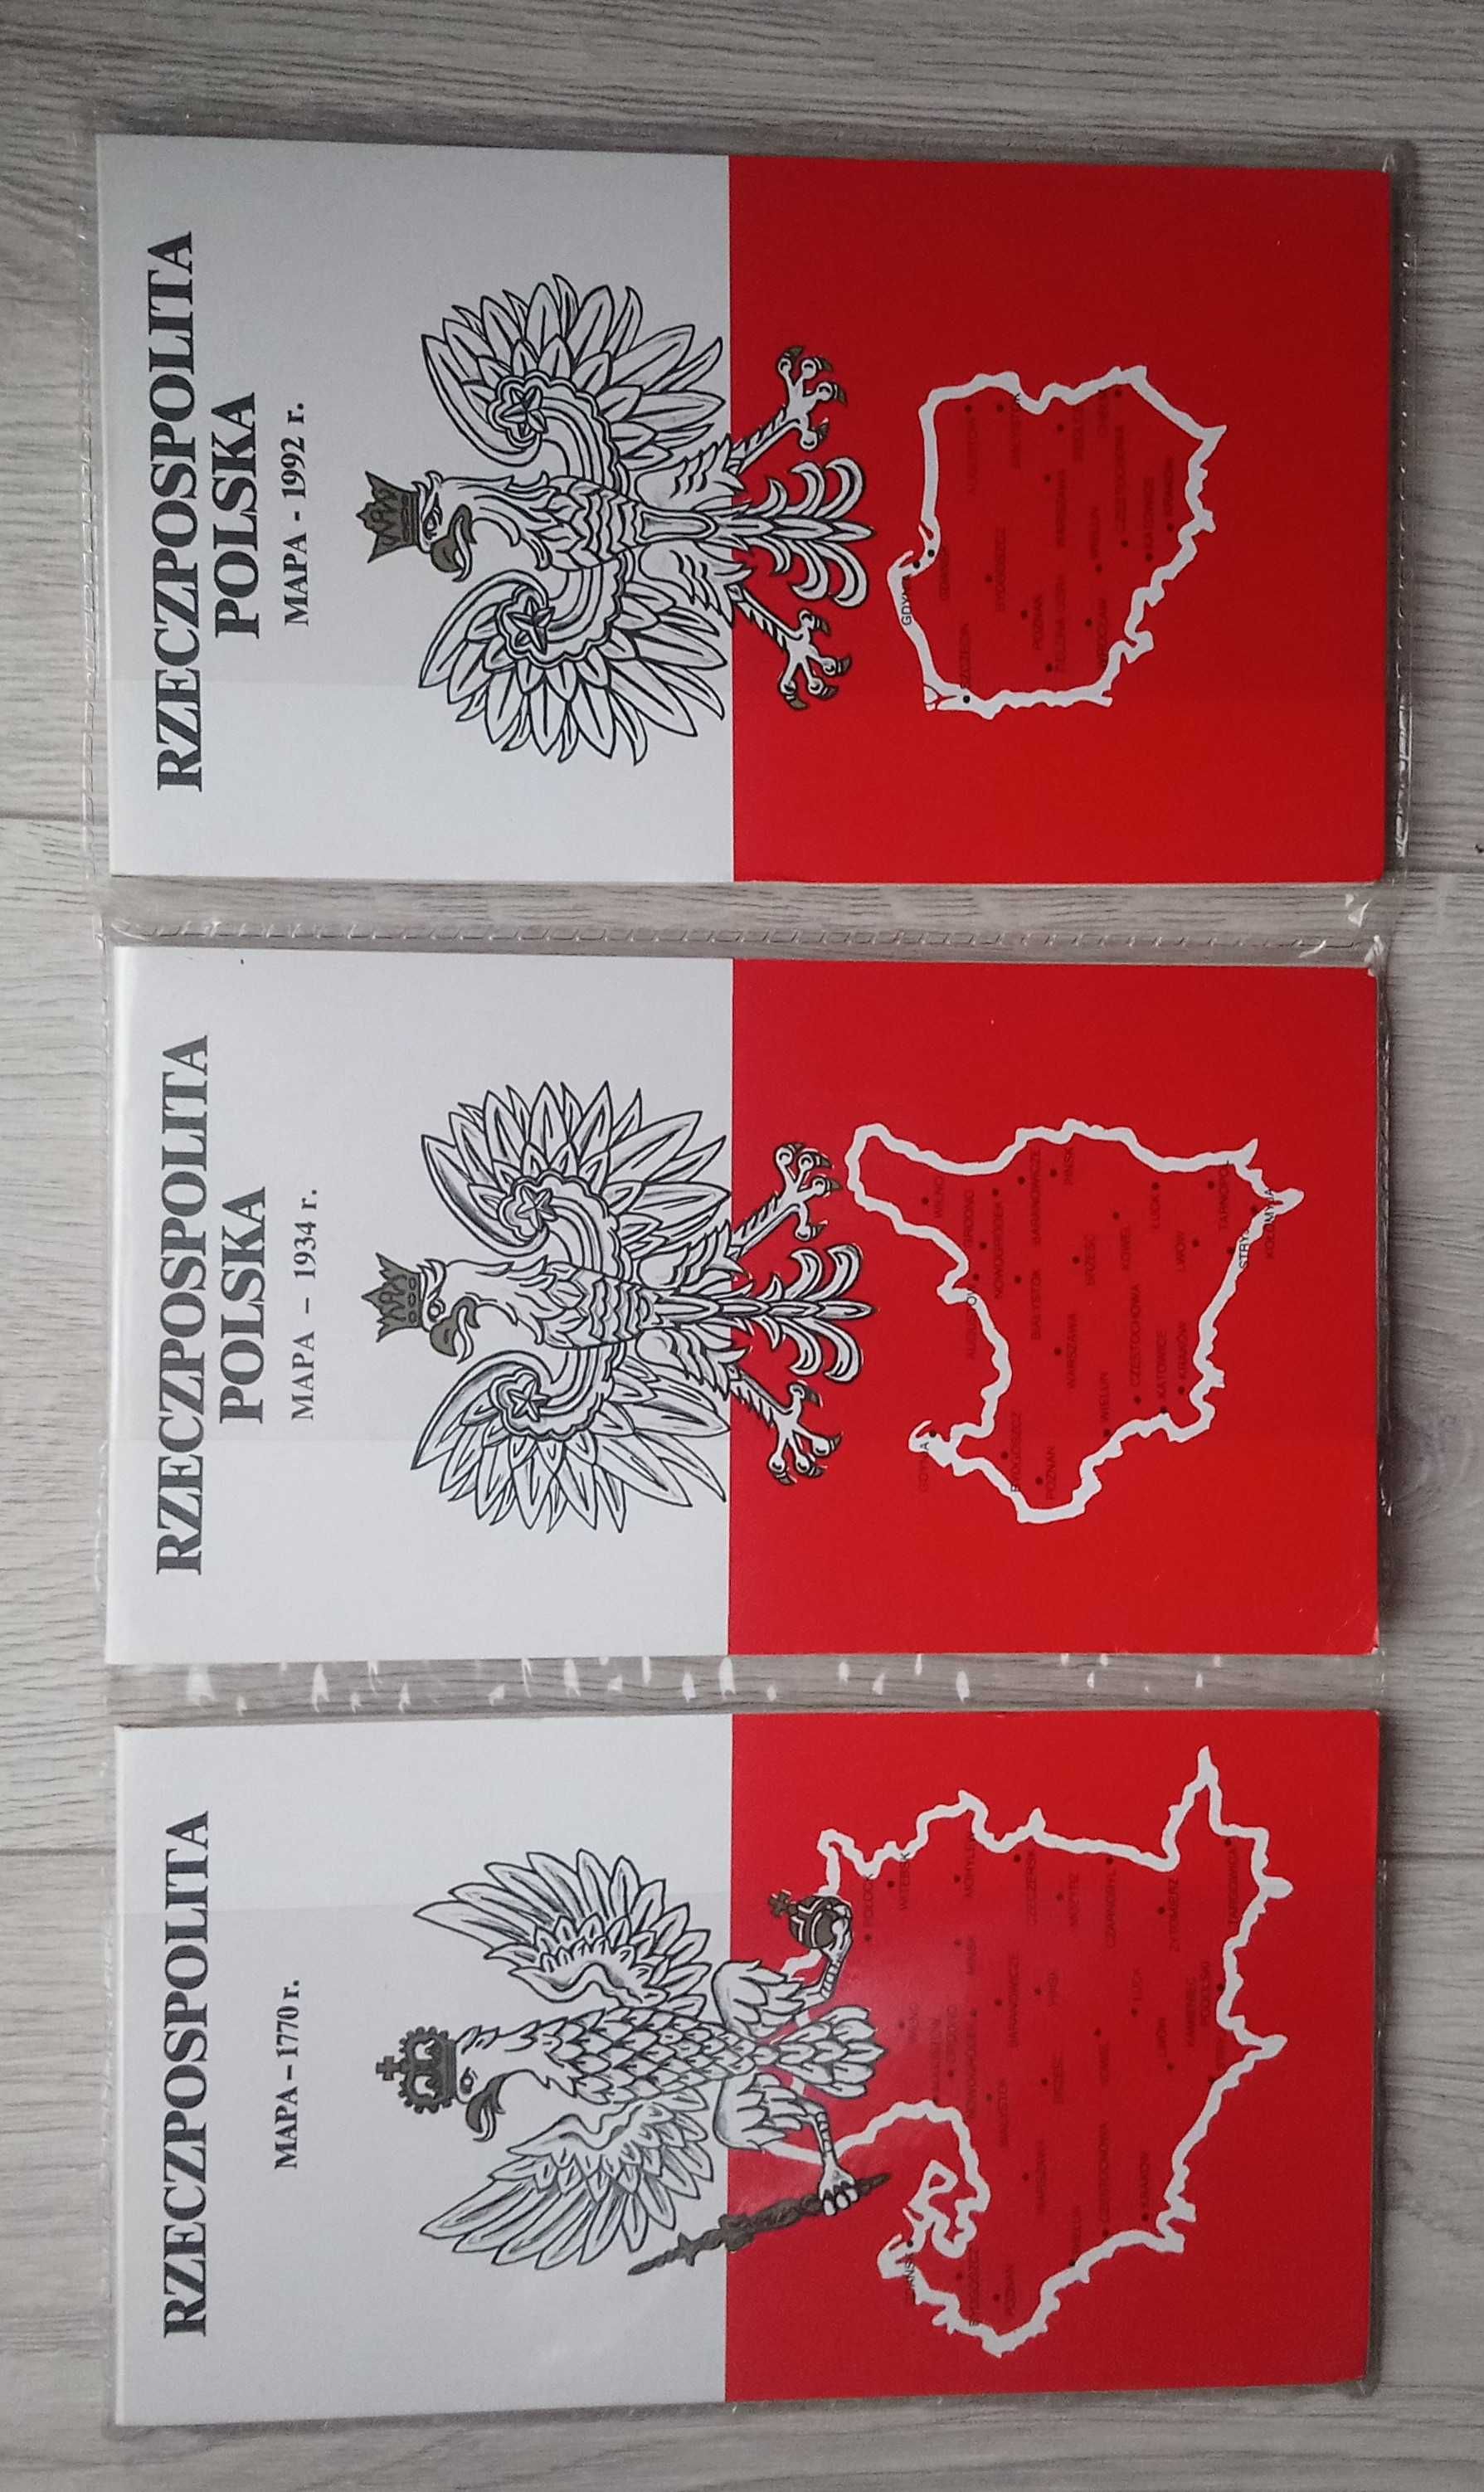 Rzeczpospolita Polska 3 mapy